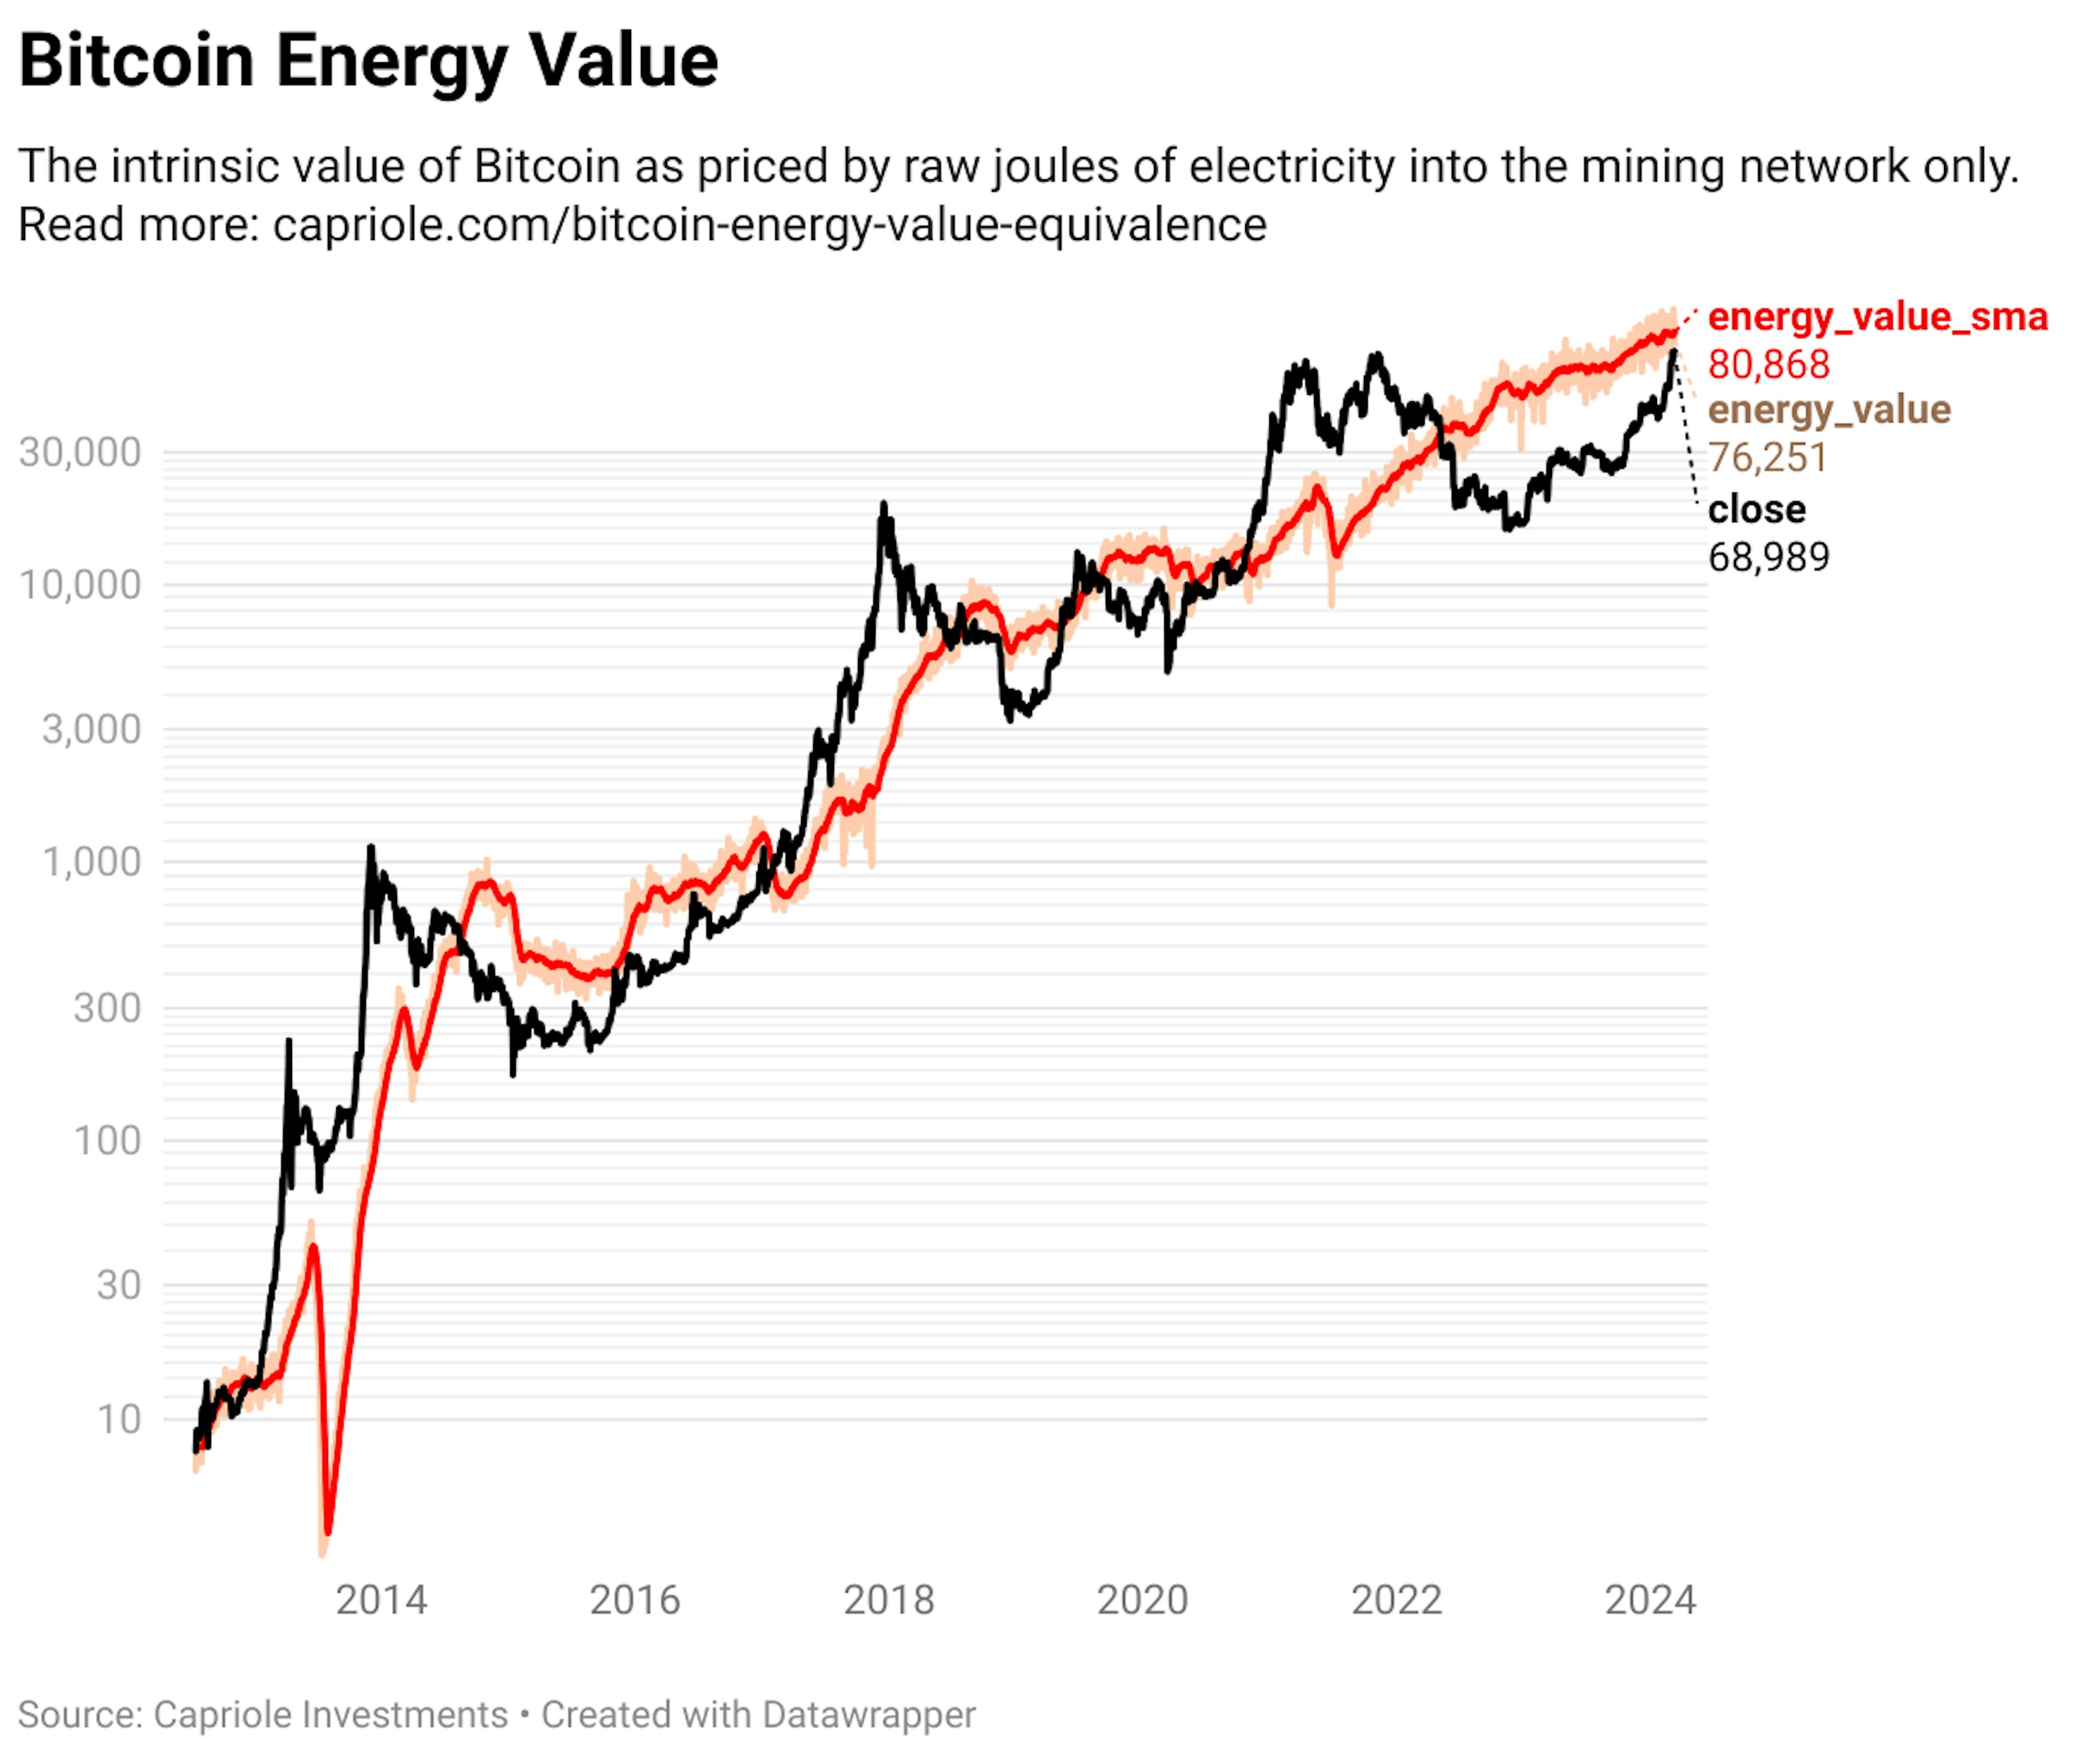 Bitcoin energy value